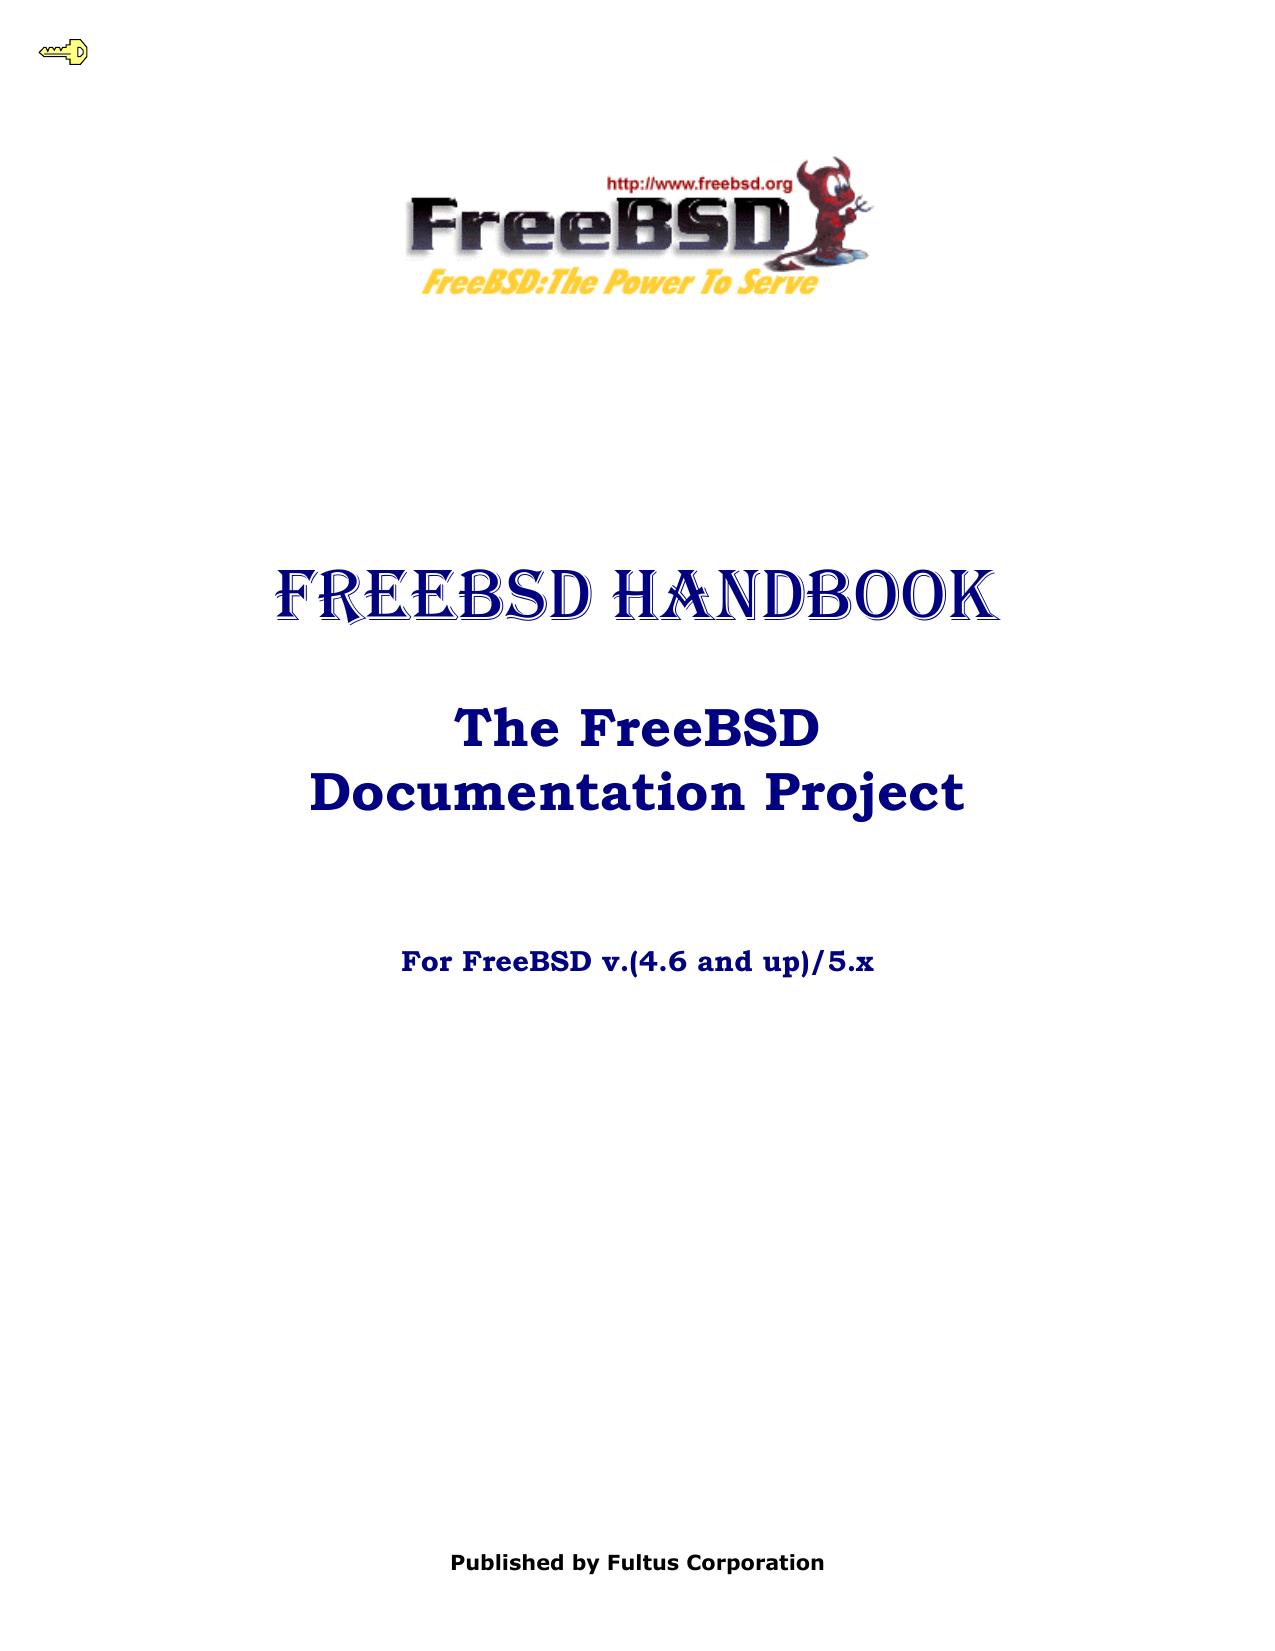 FreeBSD Handbook (v.4.6) | manualzz.com - 